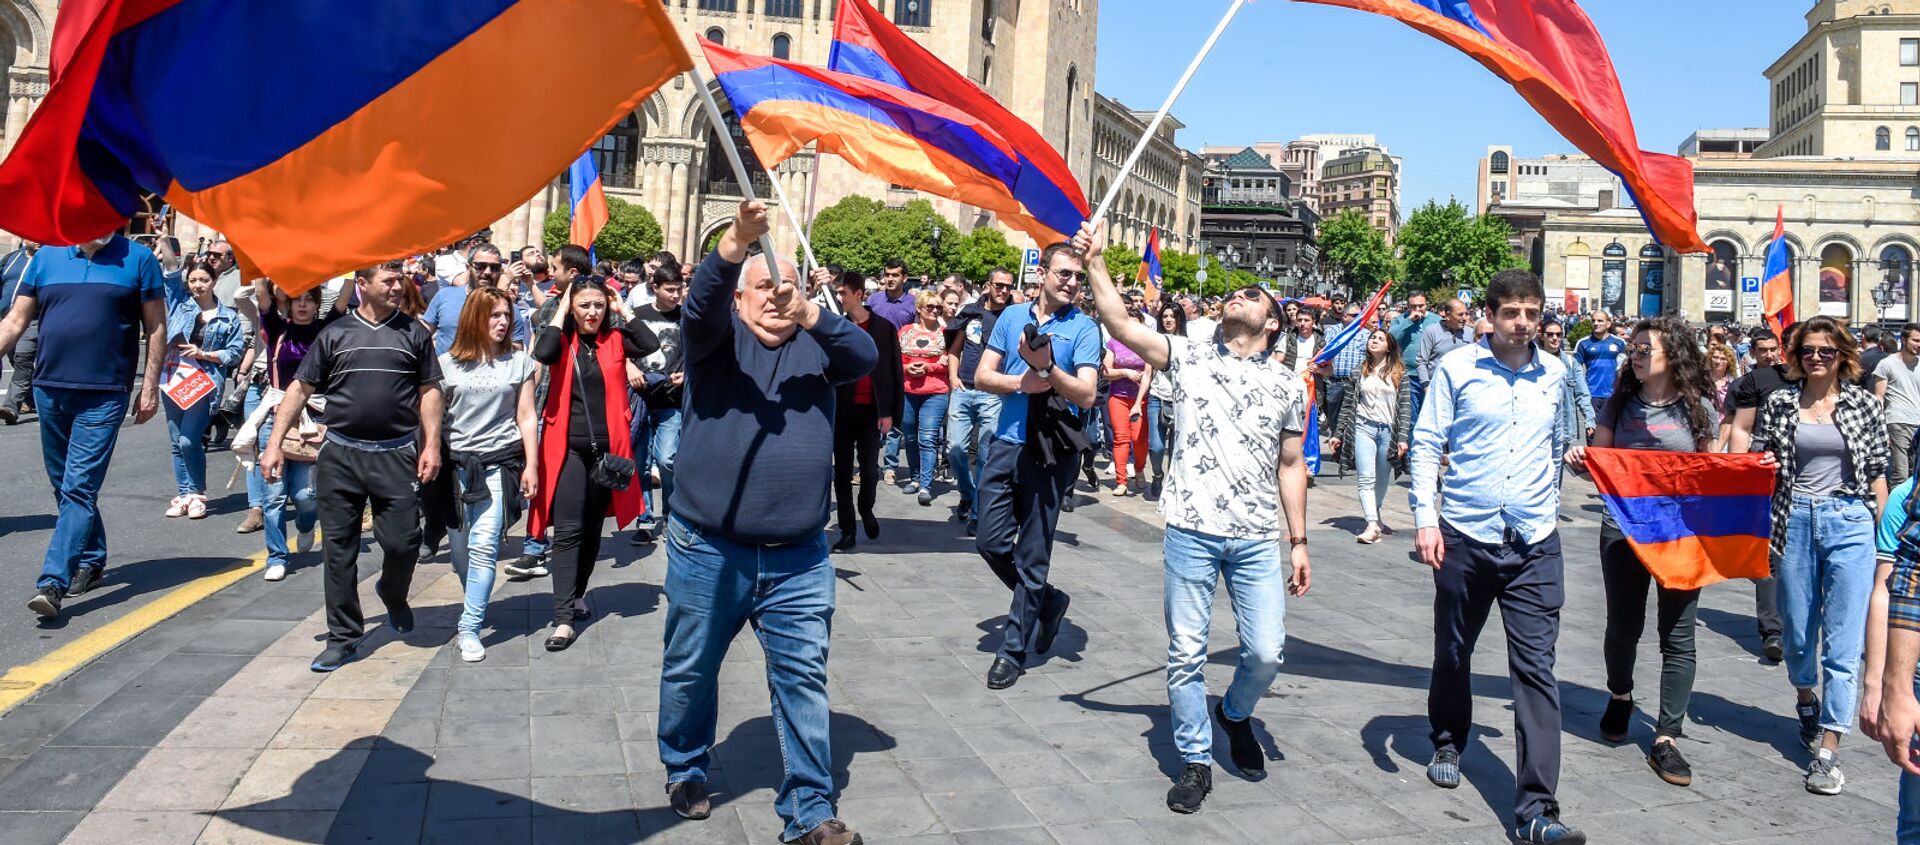 Шествие протестующих на площади Республики (25 апреля 2018). Ереван - Sputnik Армения, 1920, 01.05.2019